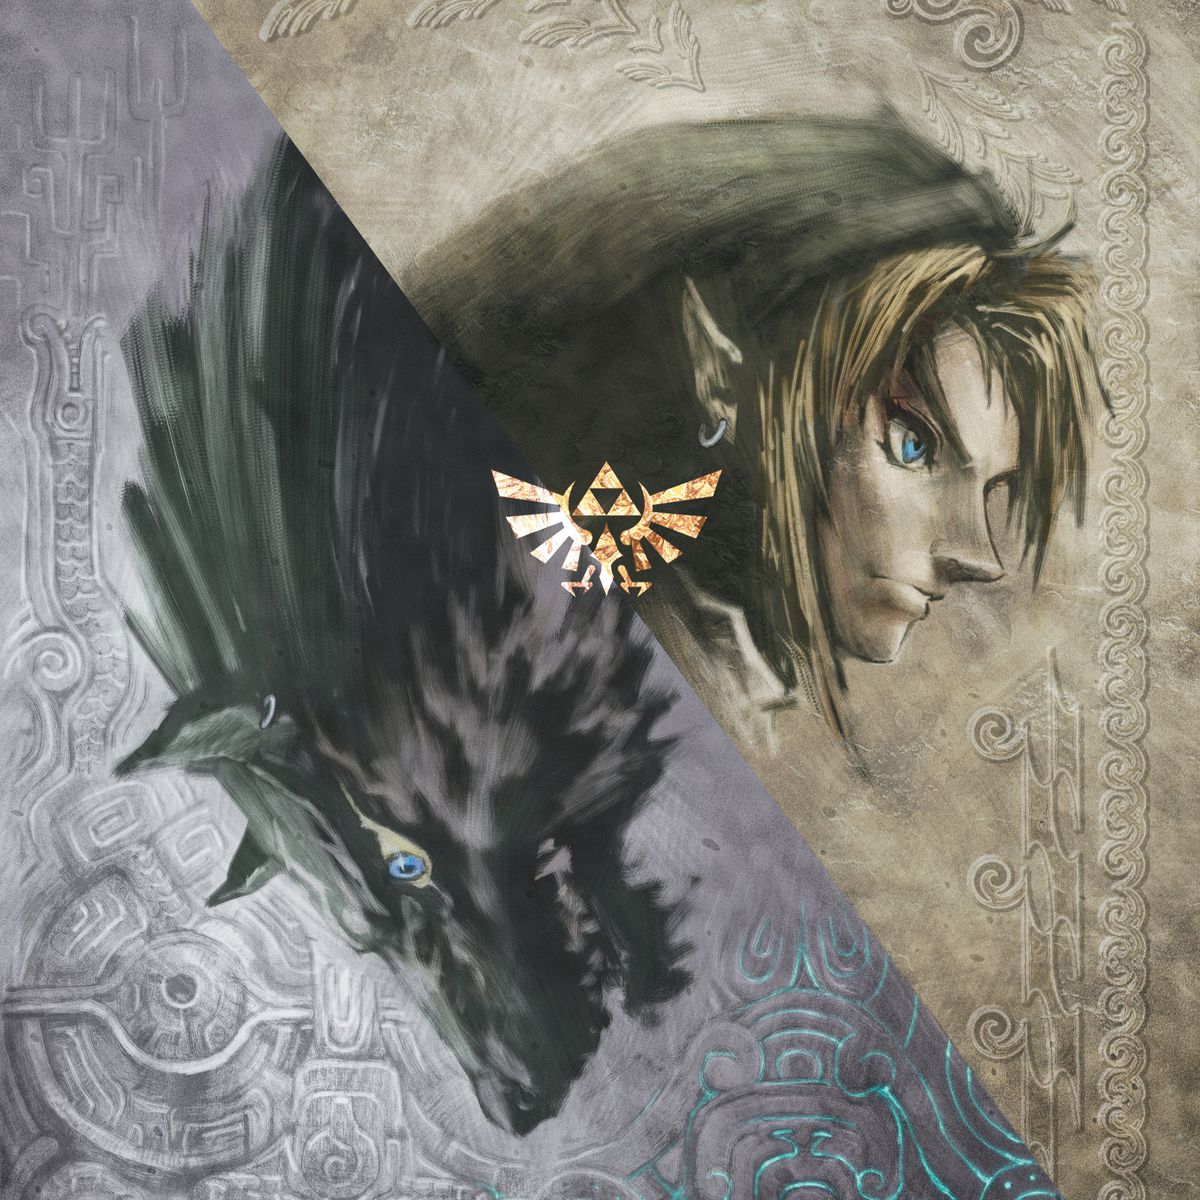 Tác phẩm minh họa đầu của Link và đầu của một con sói hung dữ được chia bằng một đường chéo với logo Triforce ở giữa